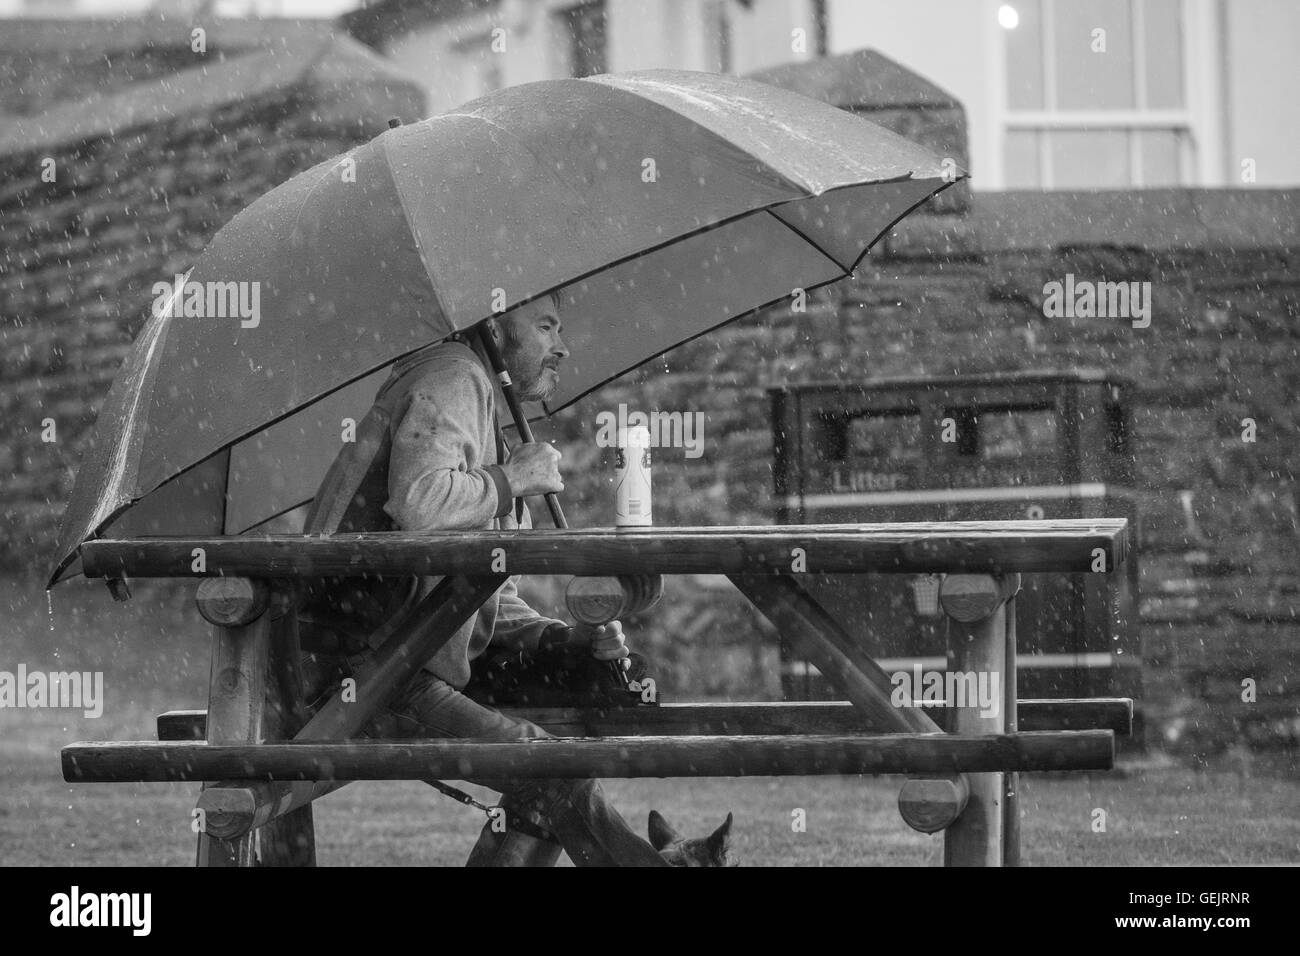 Hombre sentado en un banco bajo una sombrilla grande mientras está lloviendo fuertemente Foto de stock